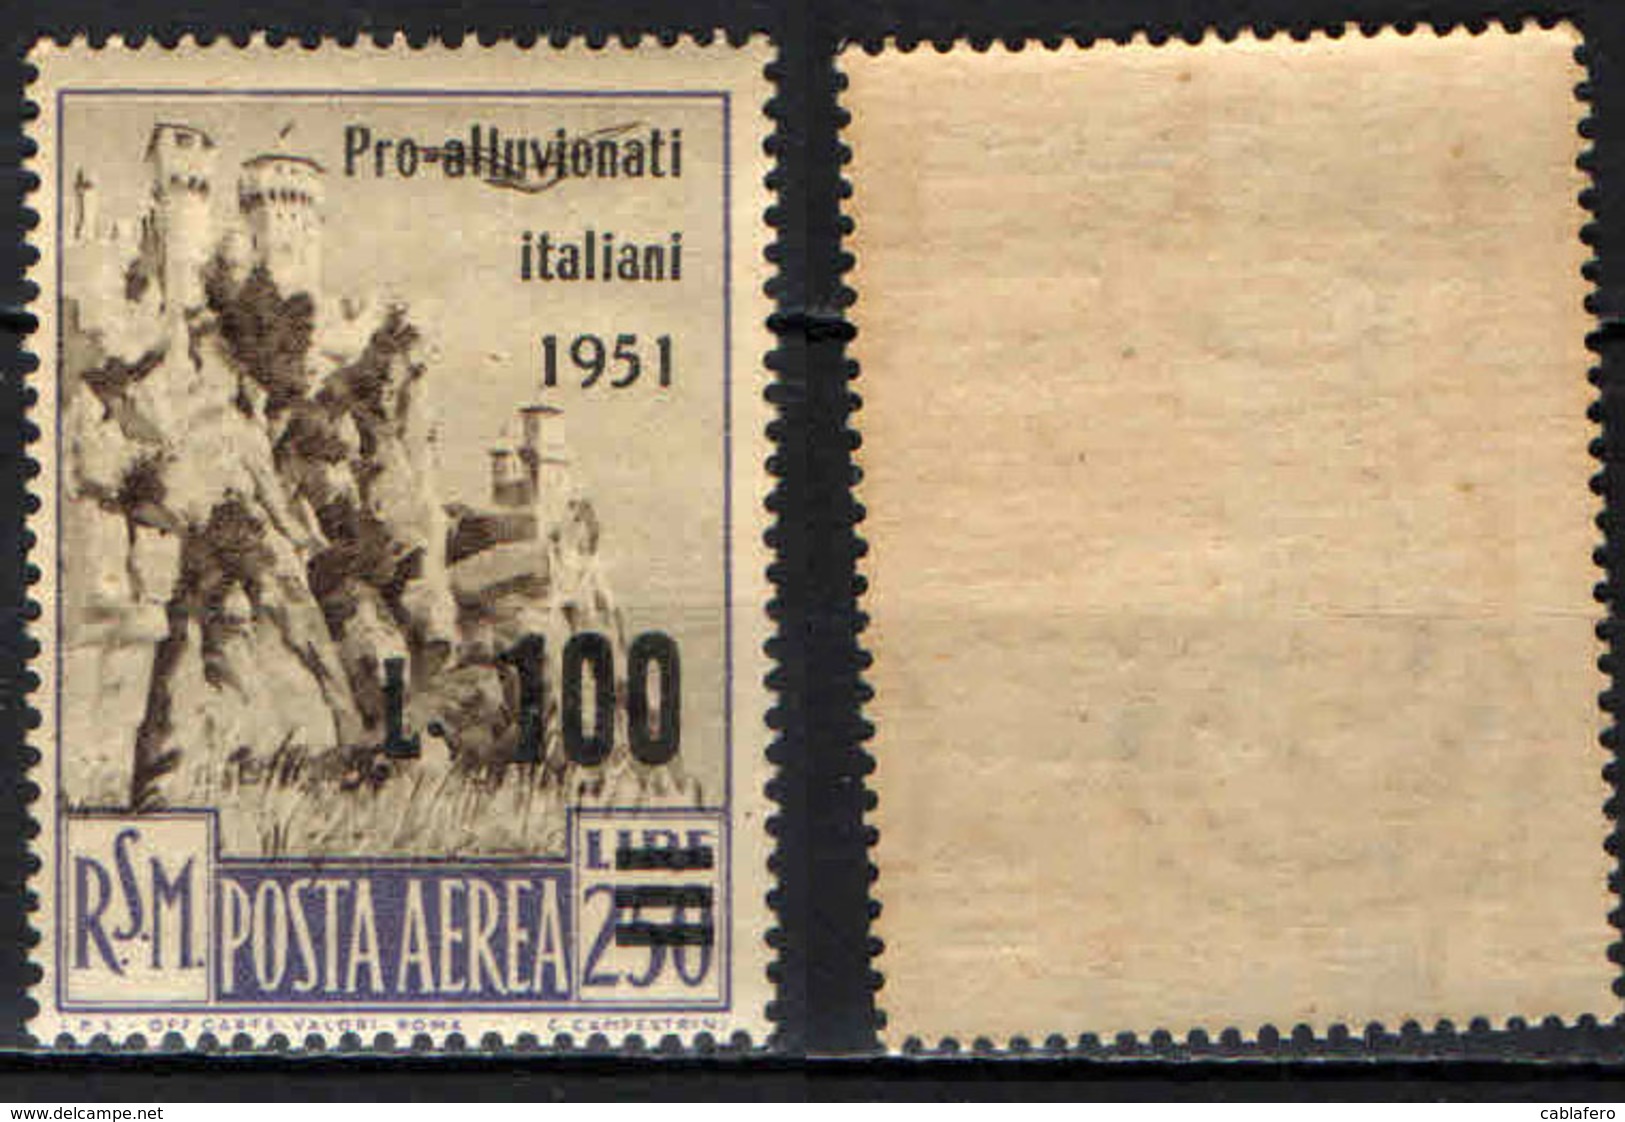 SAN MARINO - 1951 - PRO VITTIME DELL'ALLUVIONE IN ITALIA - MNH - Corréo Aéreo